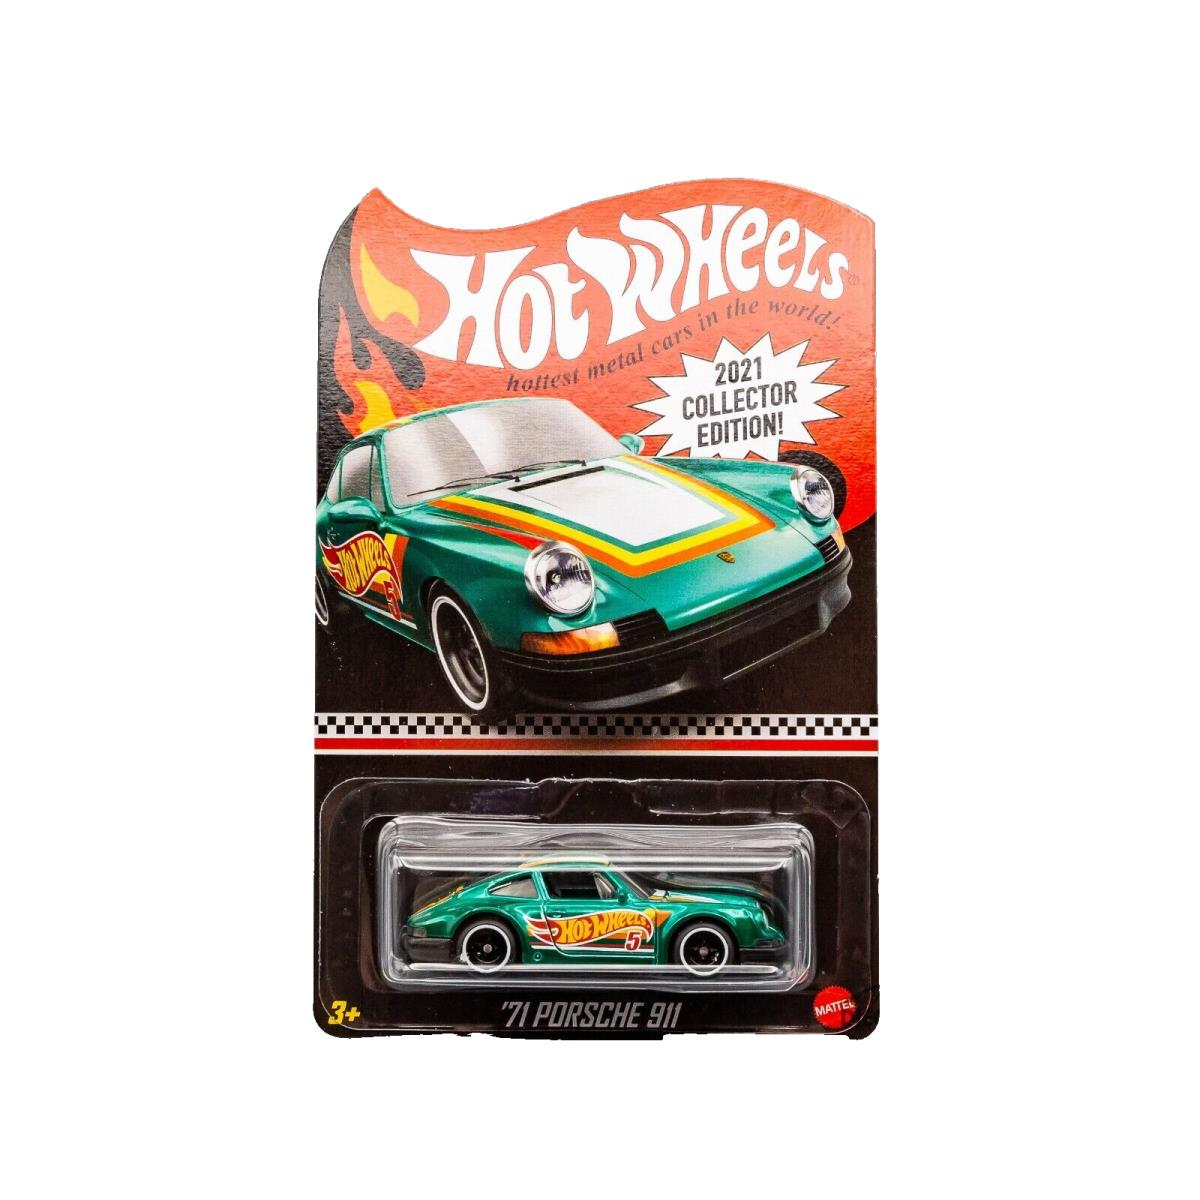 2021 Hot Wheels `71 Porsche 911 - Aqua Green - Target Mail - Green